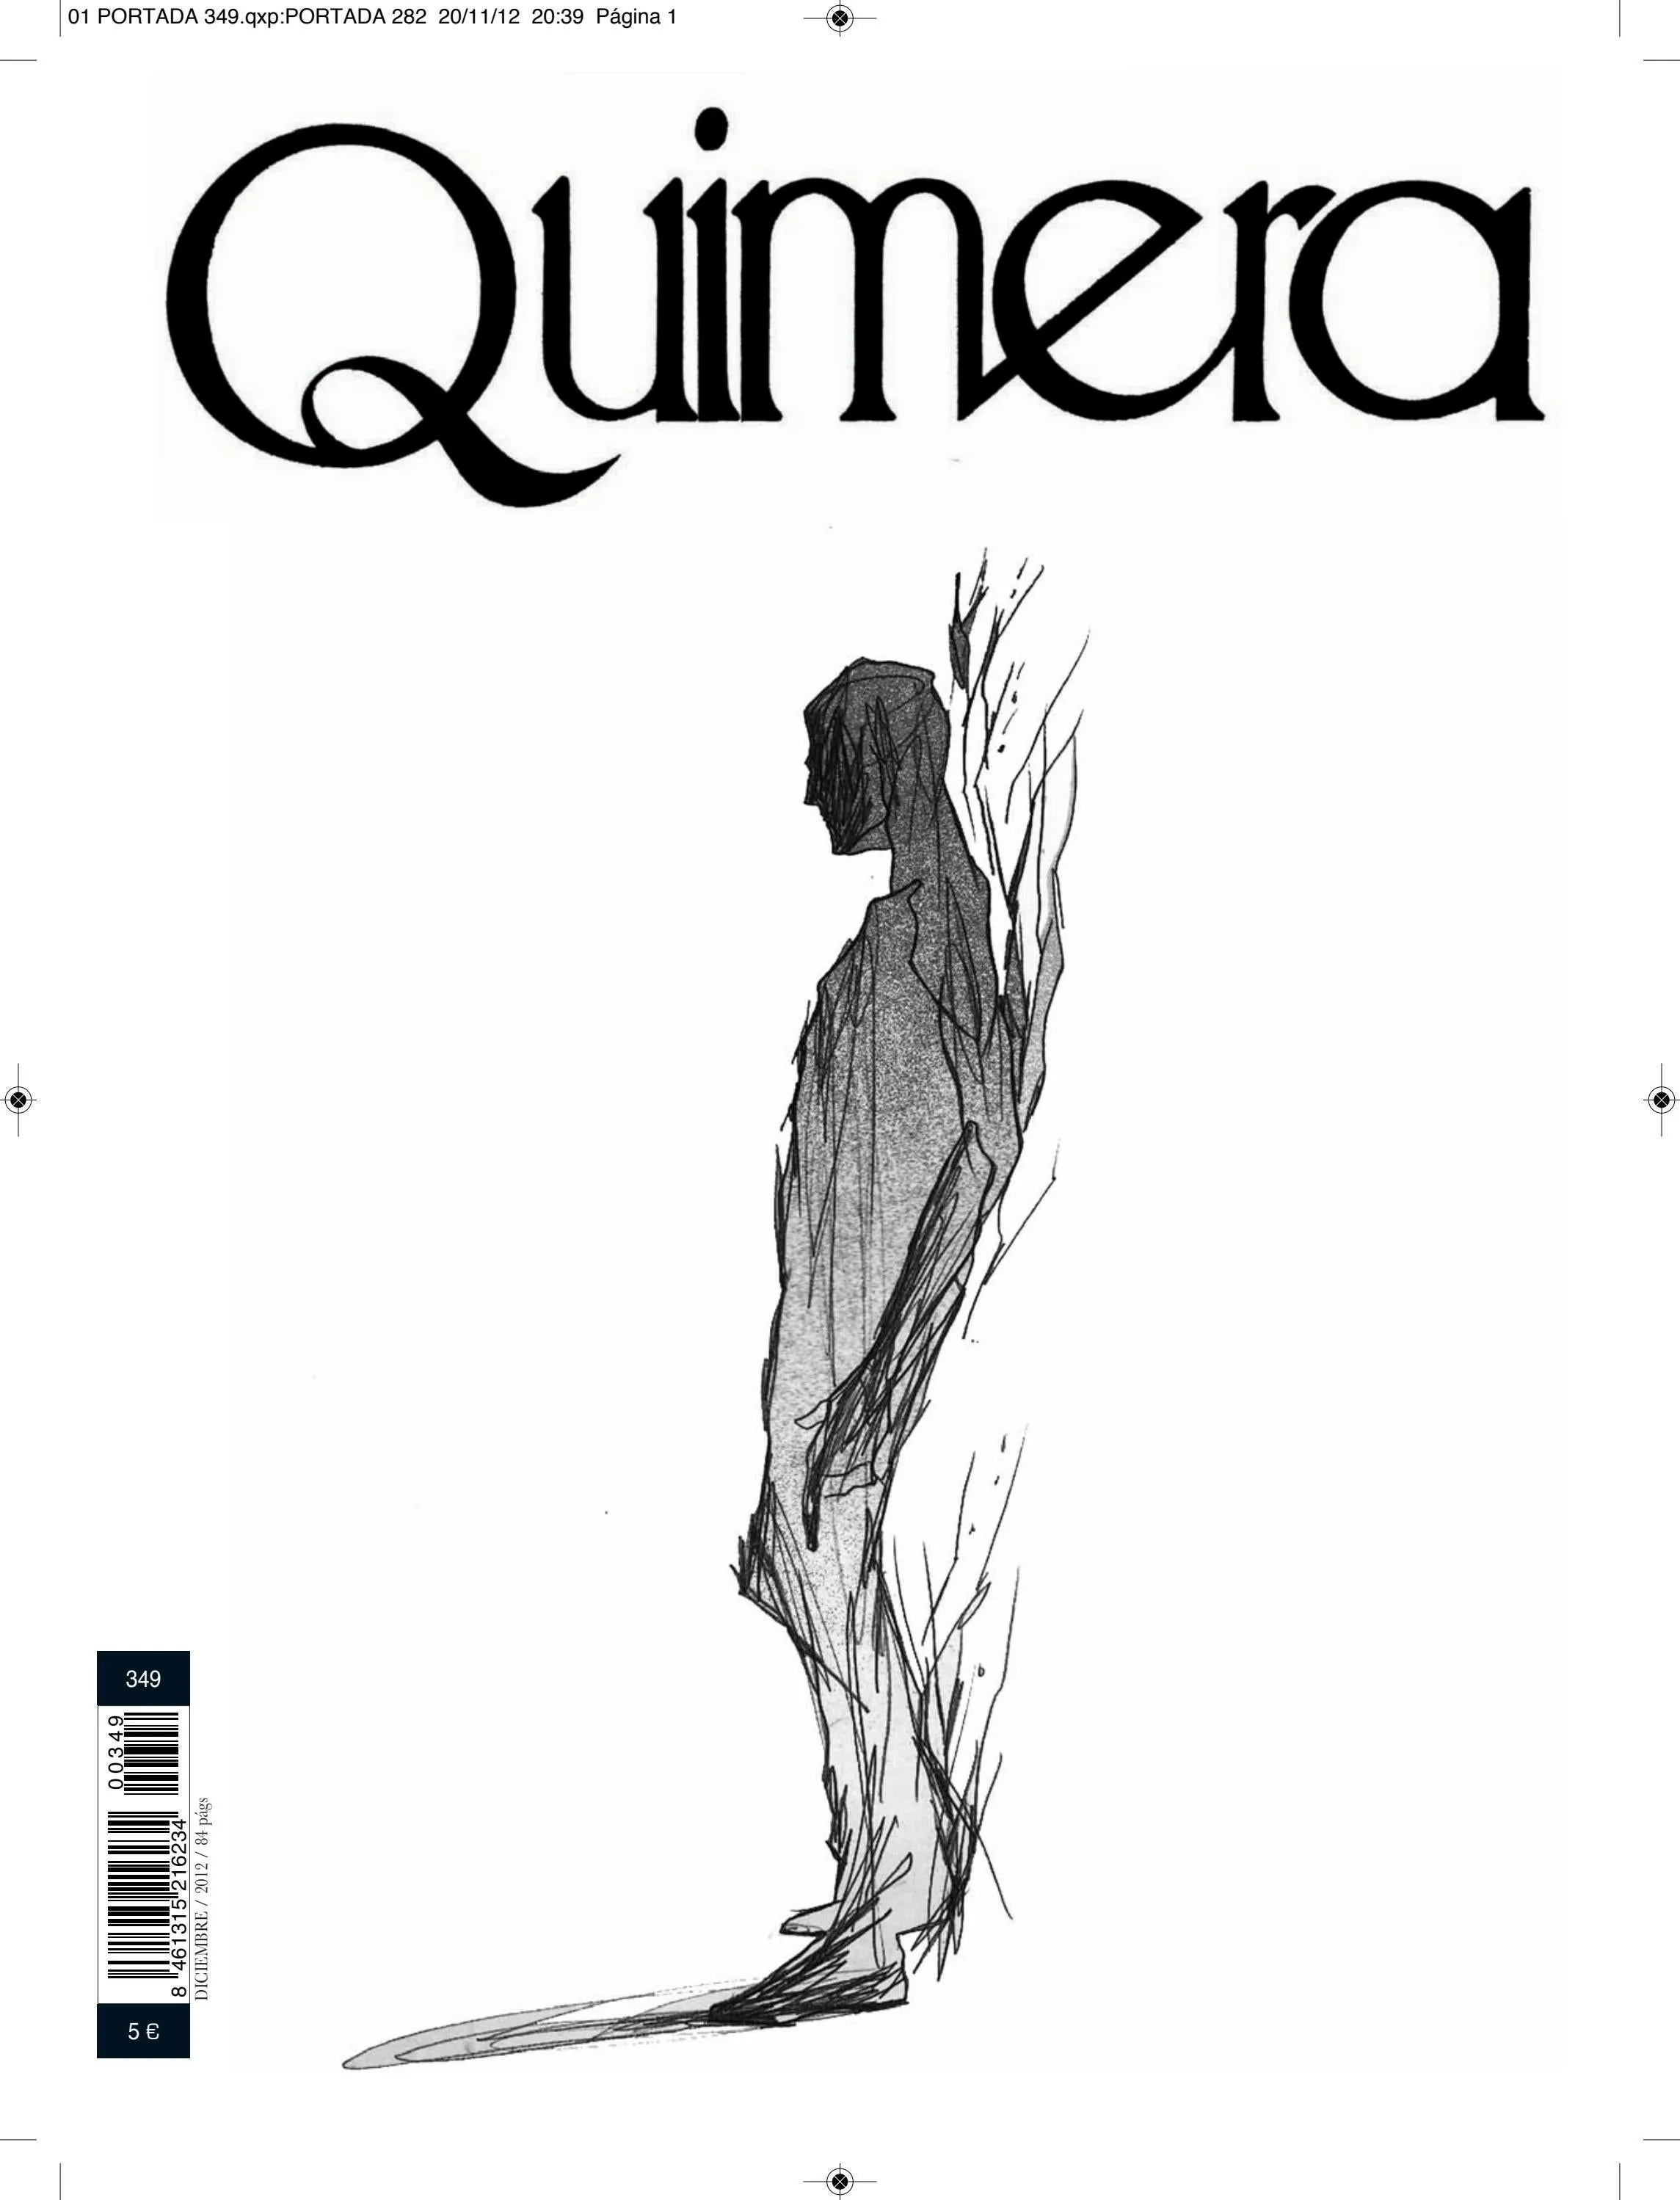 Quimera Revista de Literatura | Número 349 | Diciembre 2012 by Quimera.  Revista de literatura - Issuu